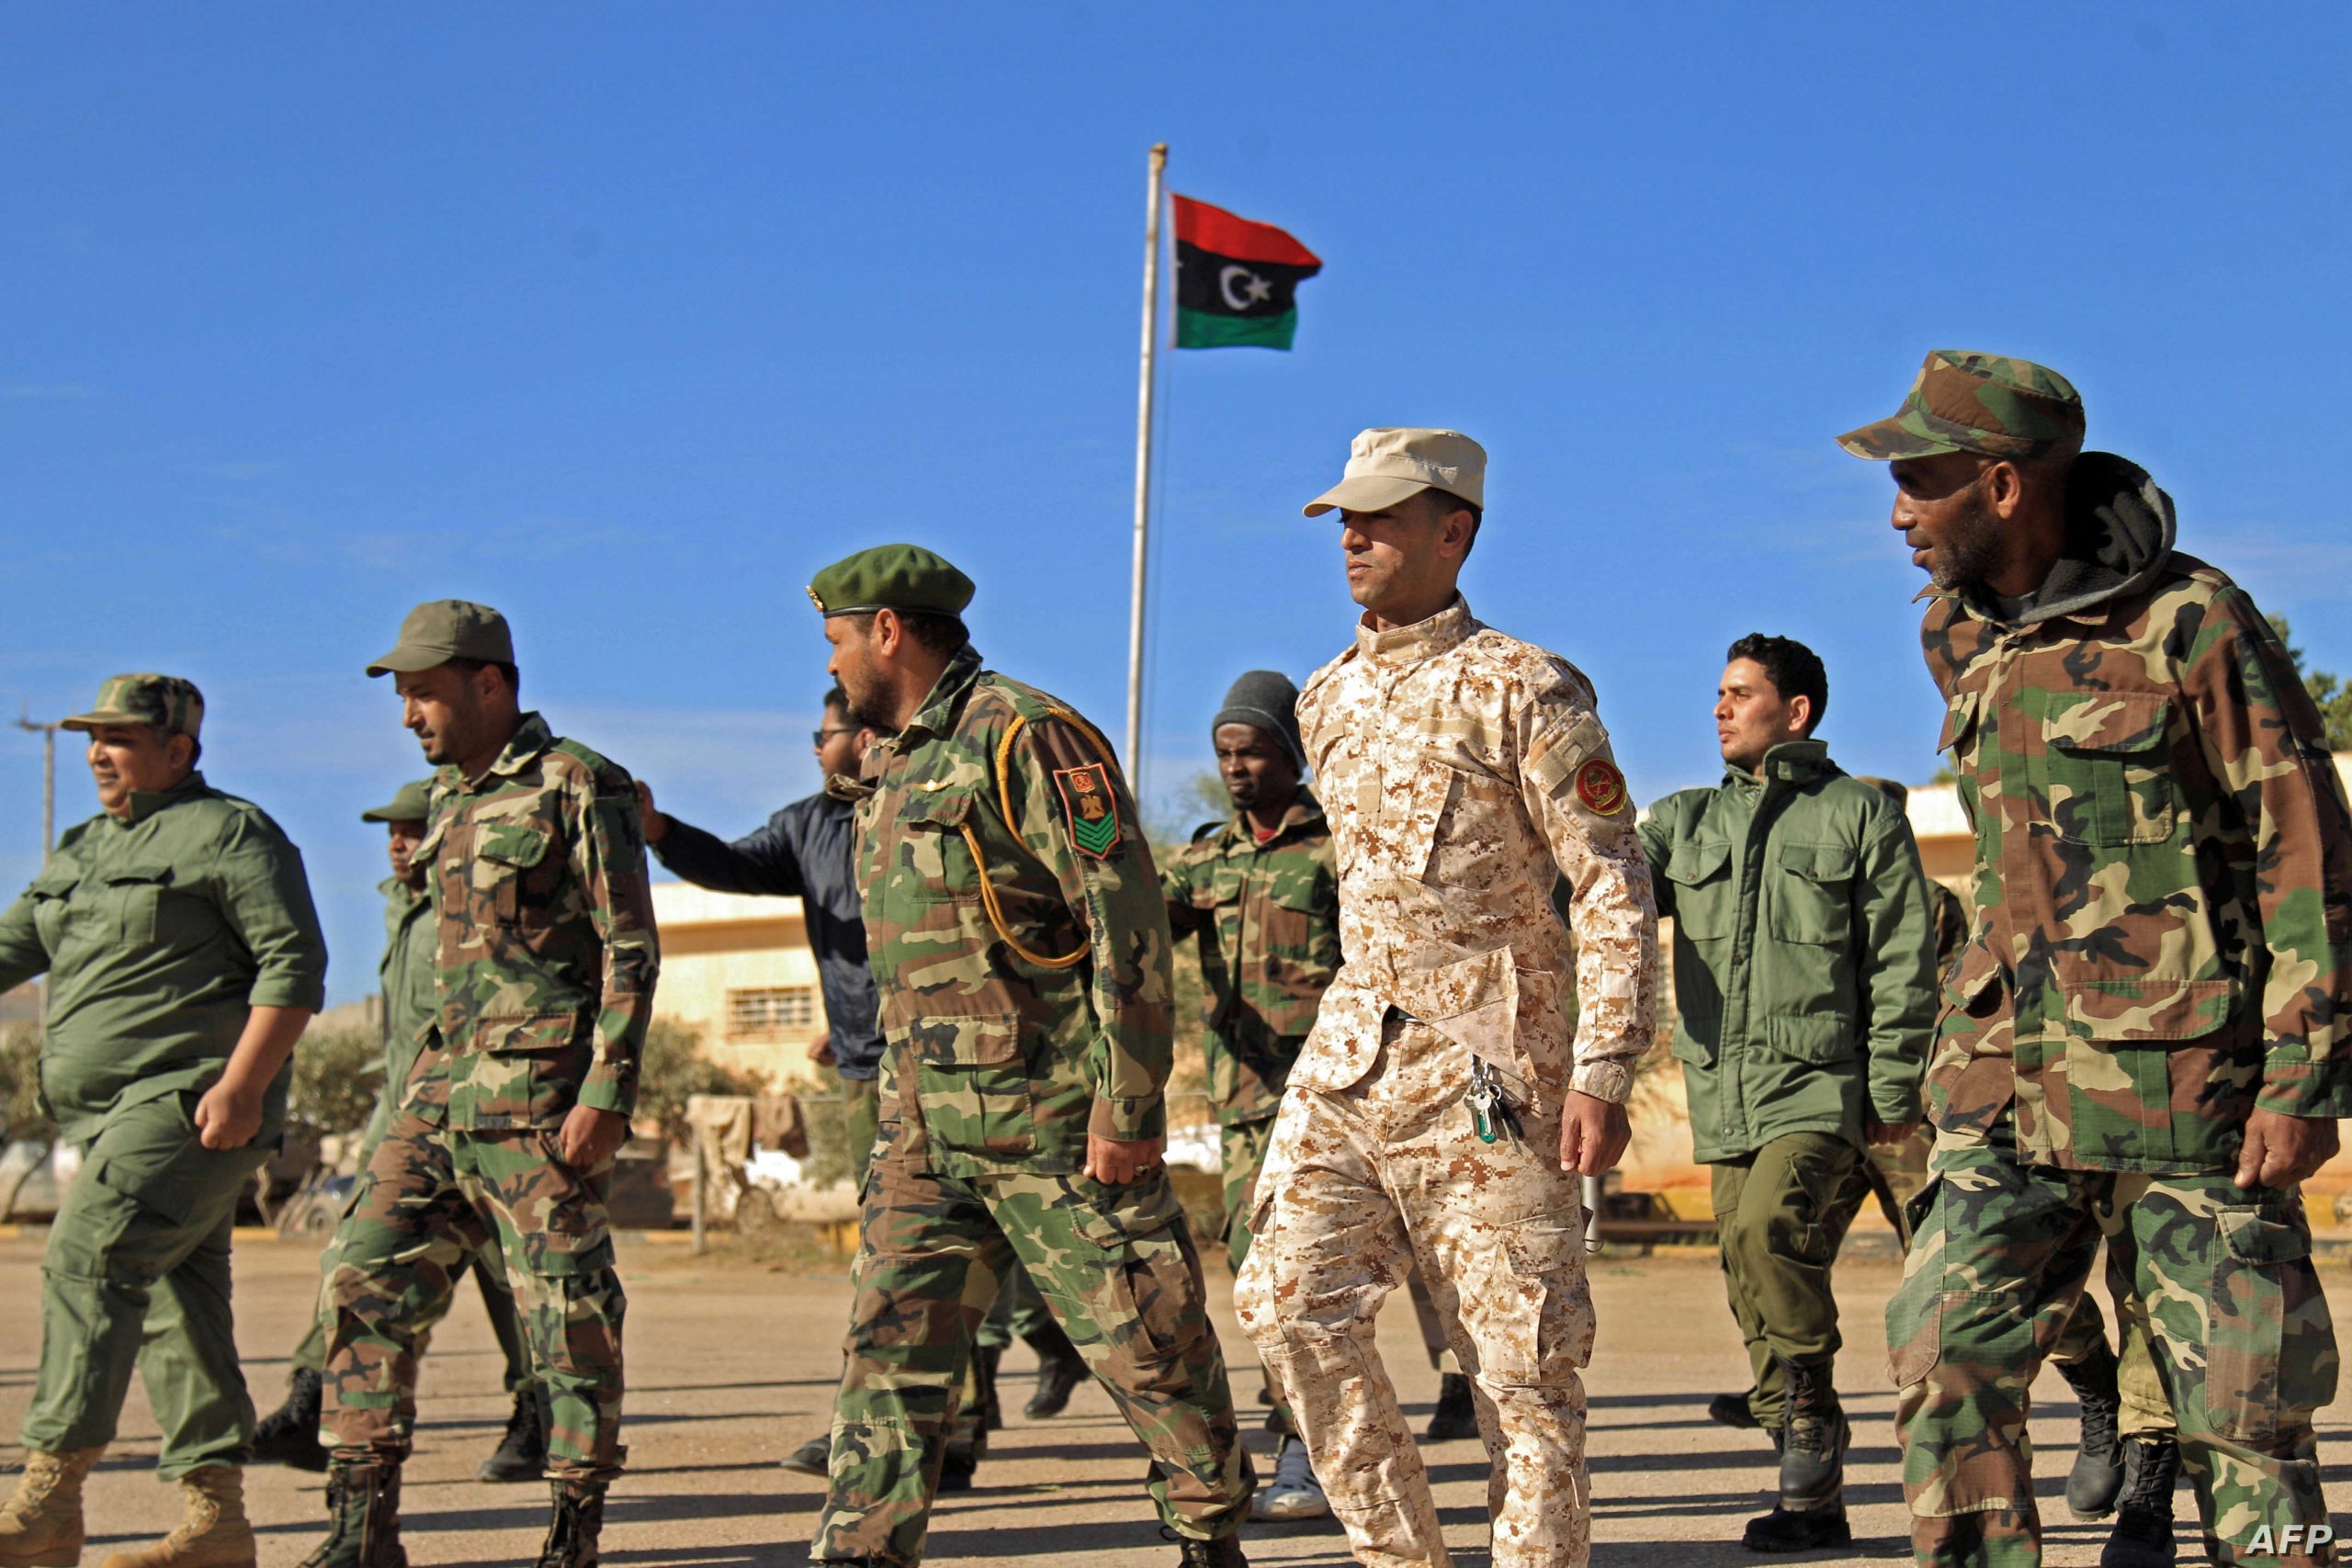 Οι Τούρκοι (πολίτες) δεν θέλουν αποστολή στρατευμάτων στην Λιβύη